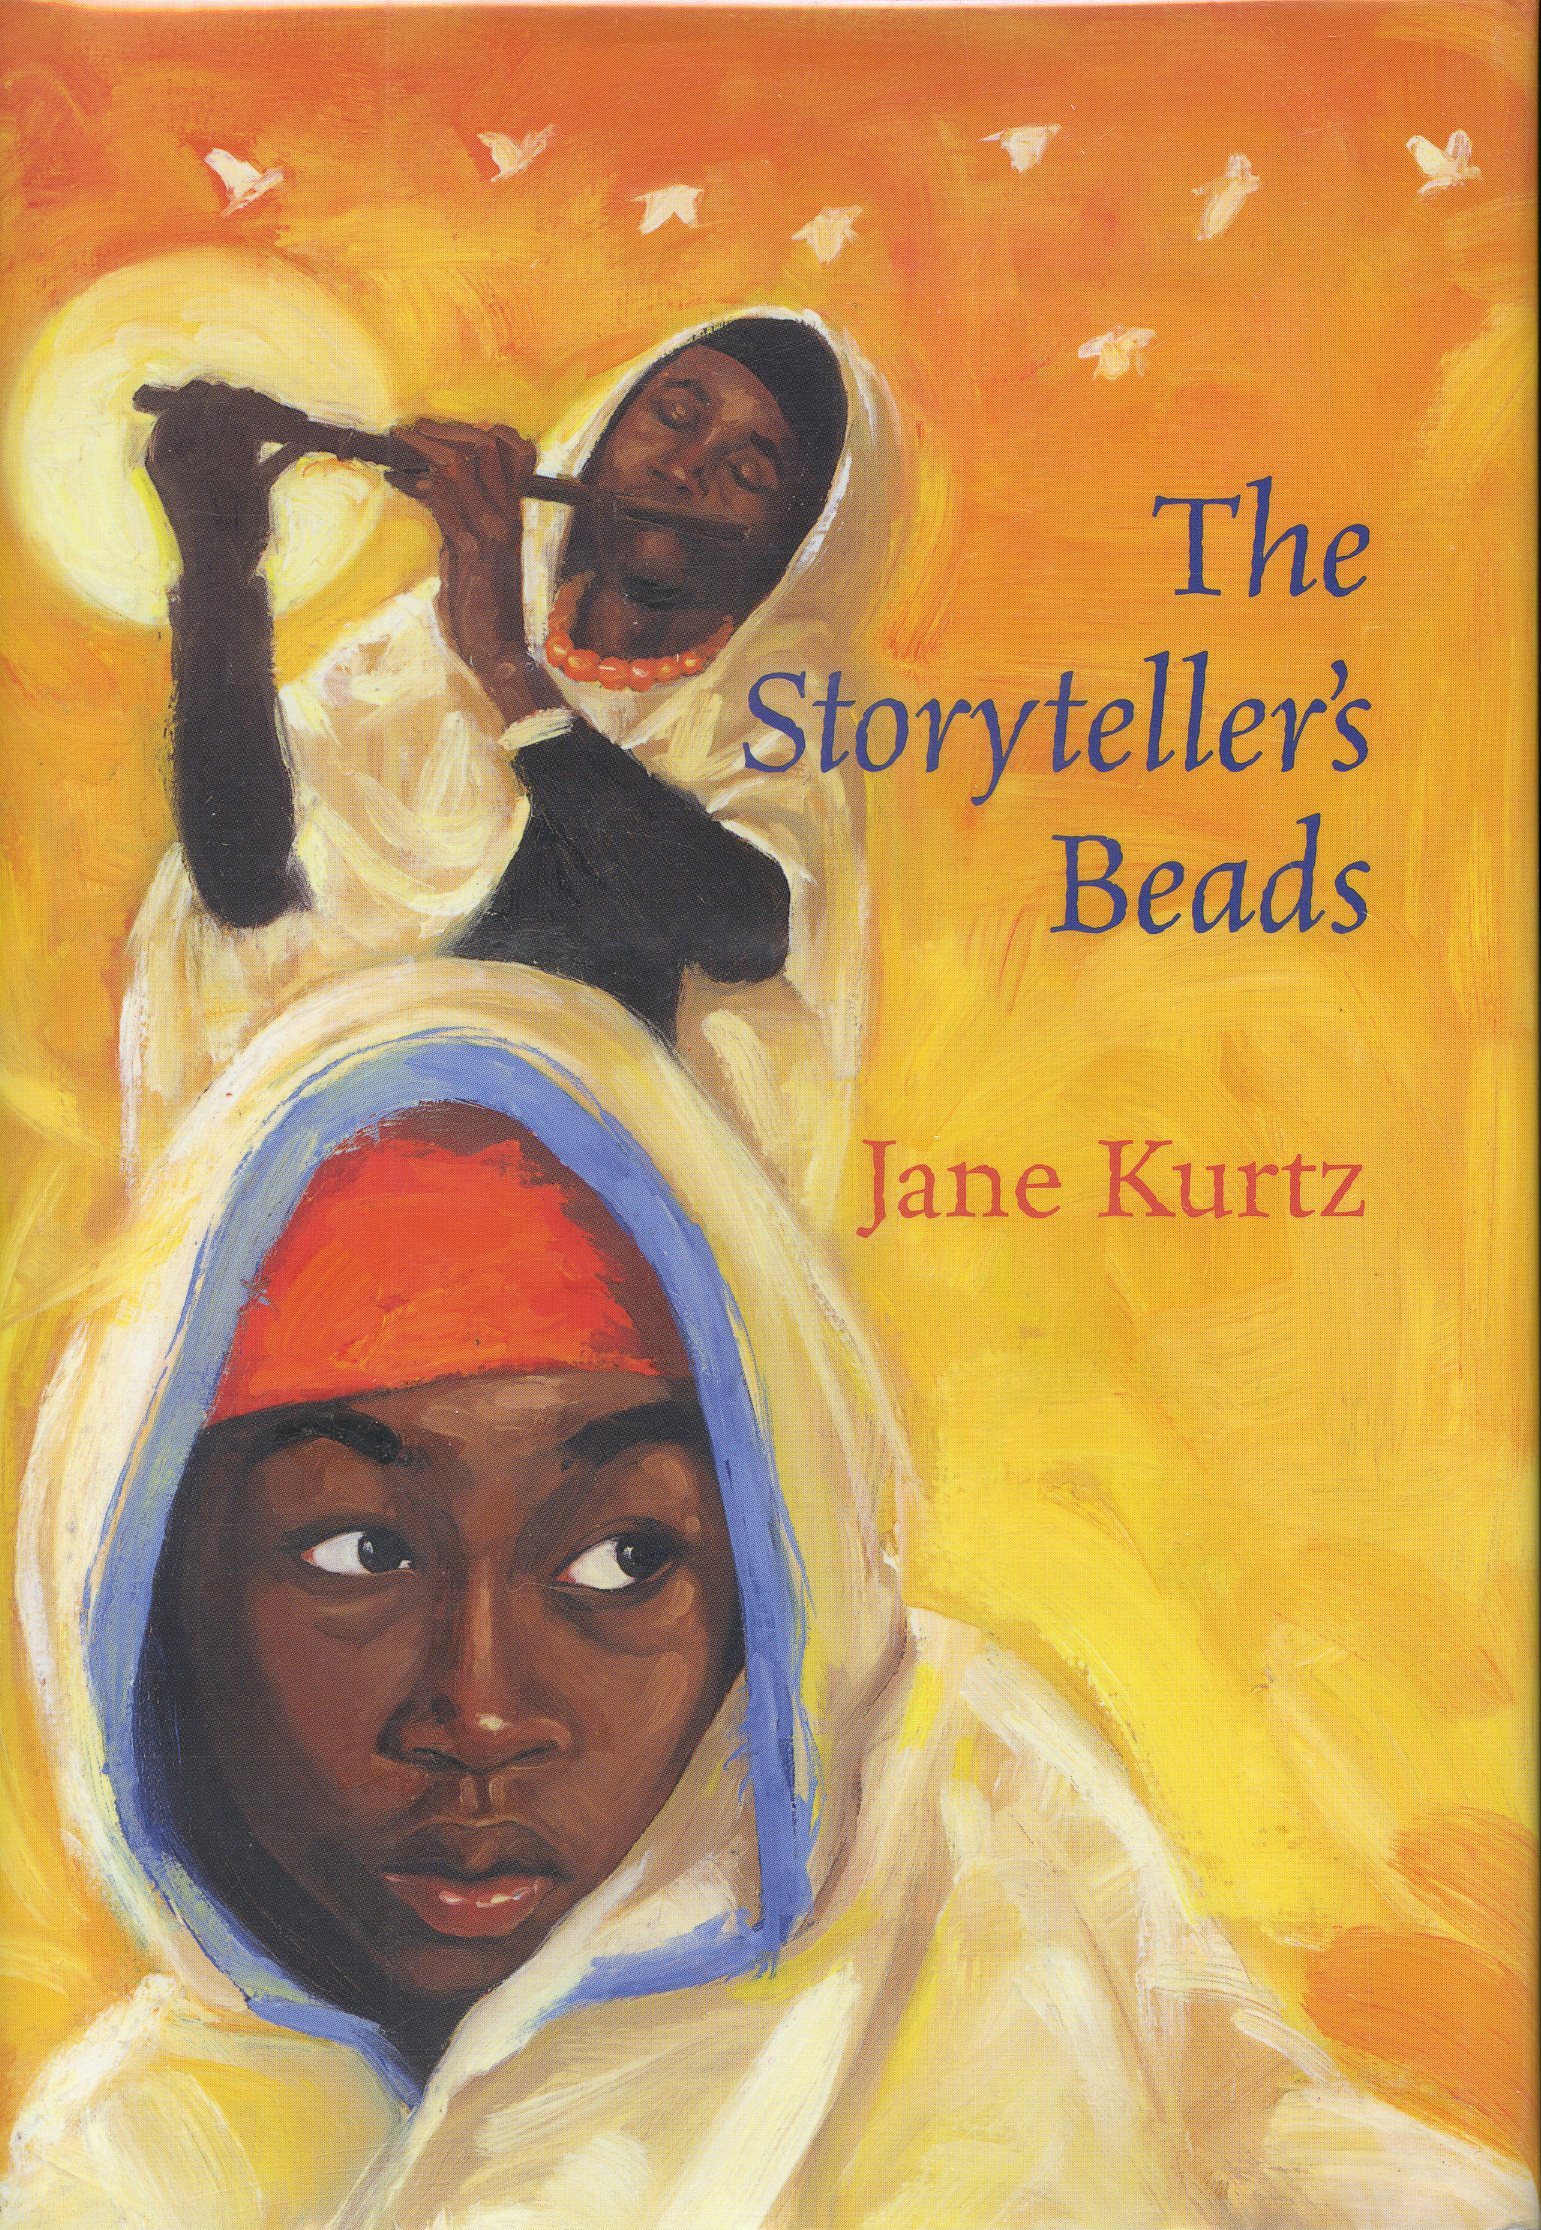 The Storyteller's Beads by Jane Kurtz